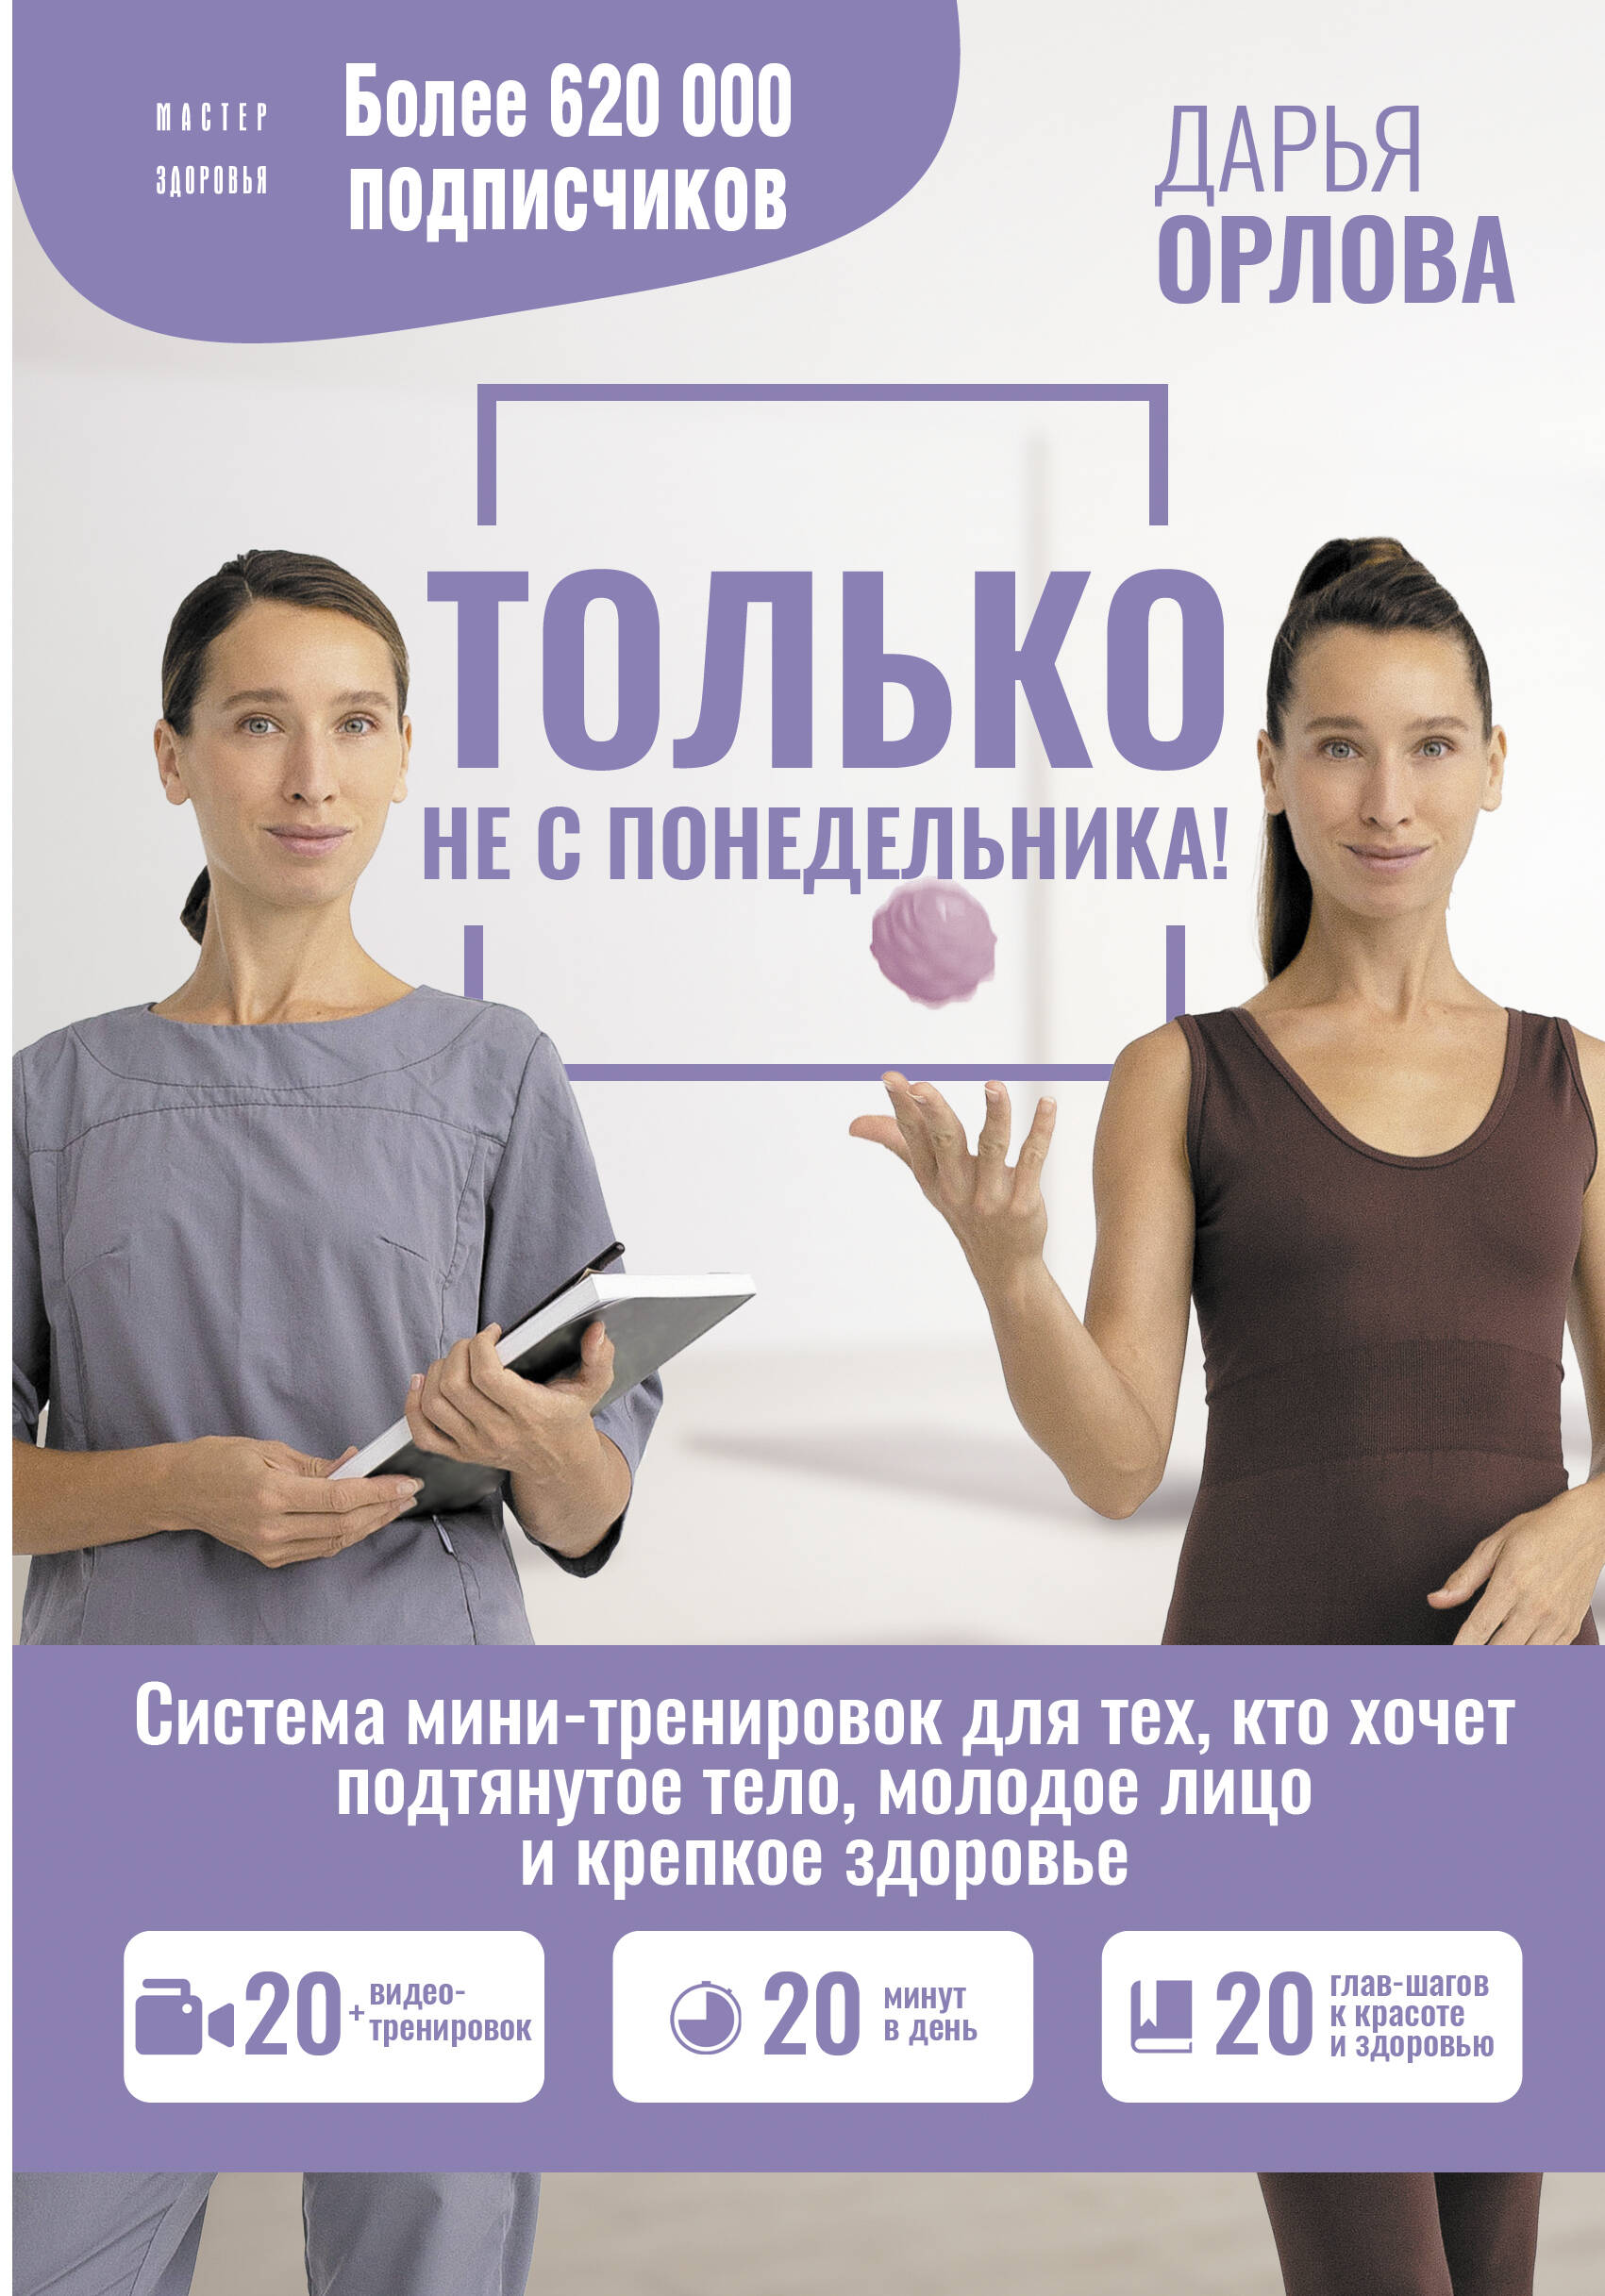 Орлова Дарья - Только не с понедельника! Система мини-тренировок для тех, кто хочет подтянутое тело, молодое лицо и крепкое здоровье